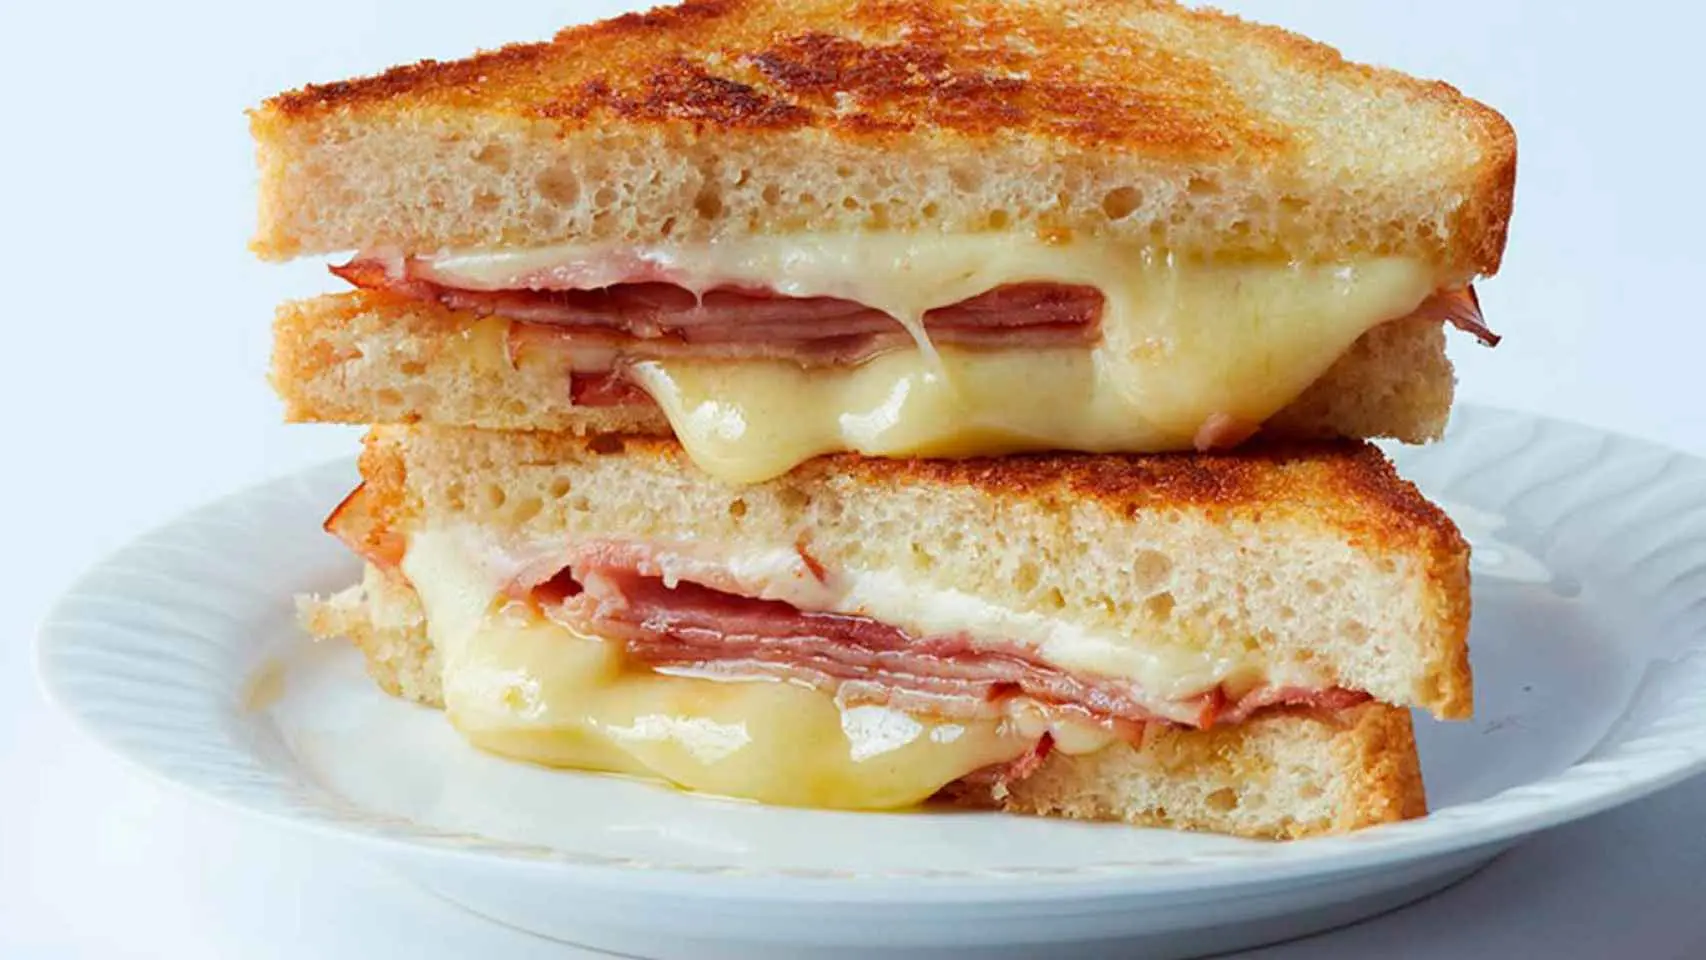 como se llama el sandwich de jamon y queso - Quién inventó el sándwich de jamón y queso